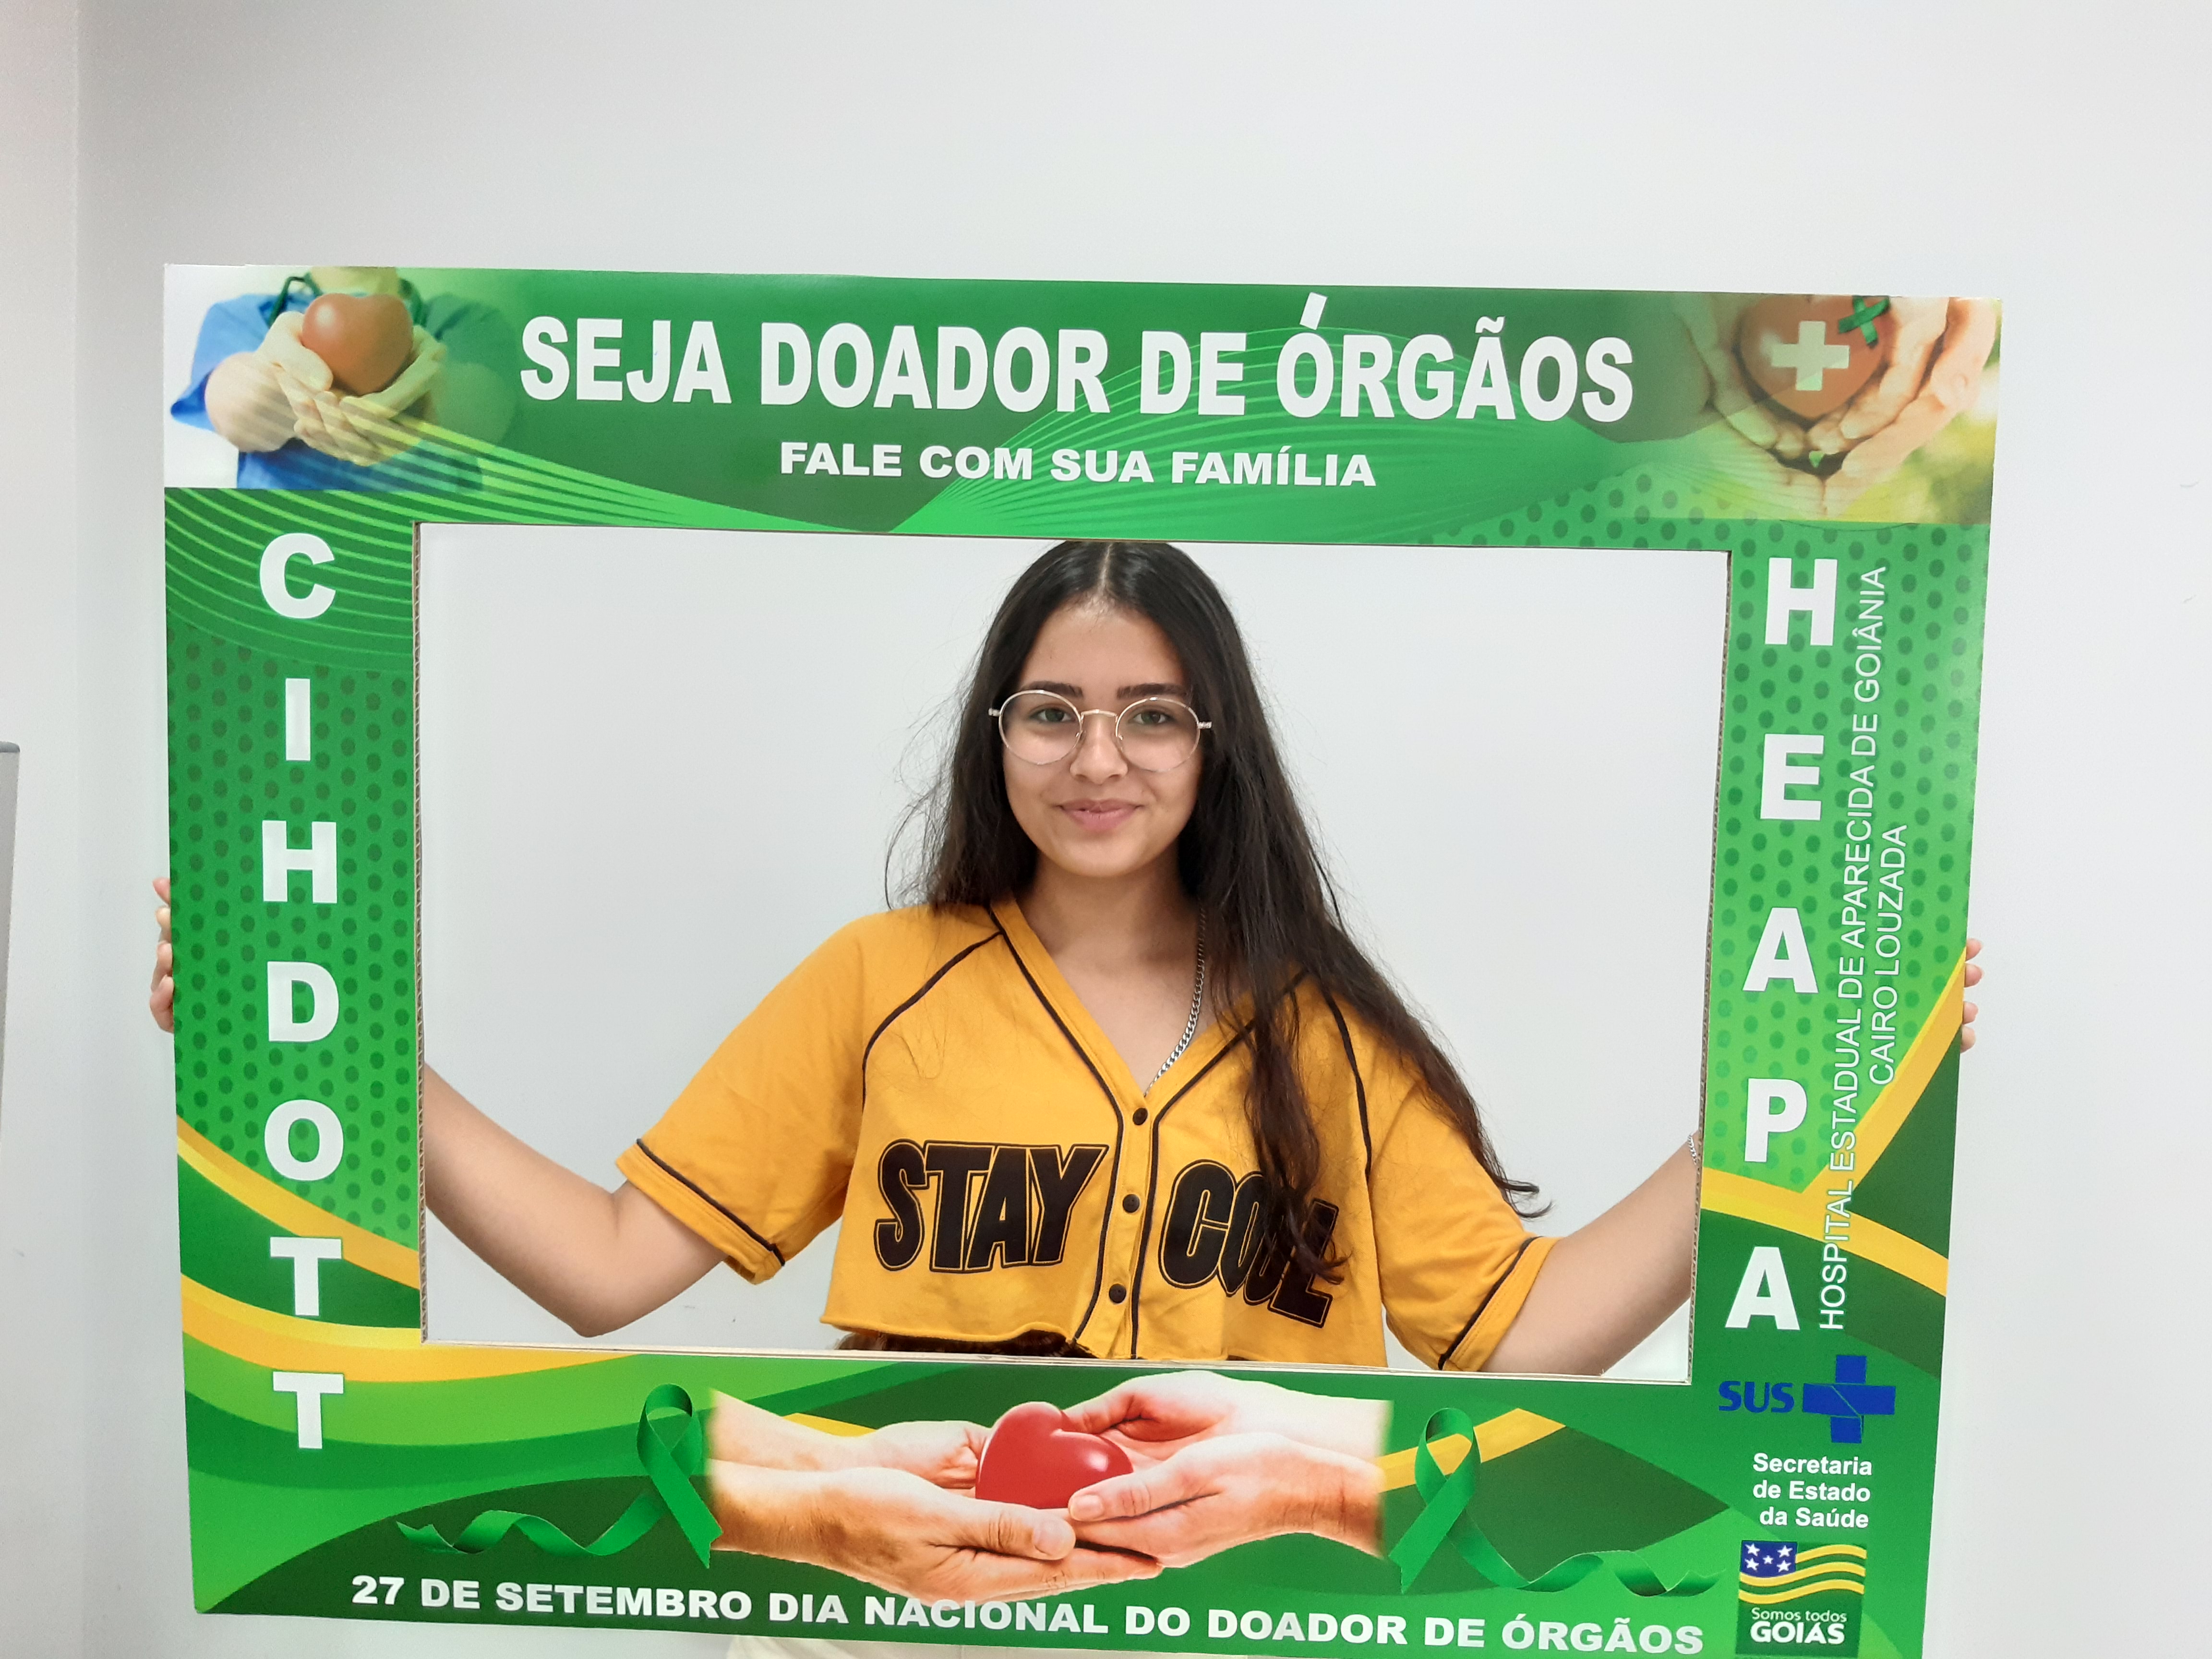 Estudante do 1º ano do curso Técnico em Edificações, Maria Luísa Alvarenga Oliveira, durante a apresentação sobre o Setembro Verde